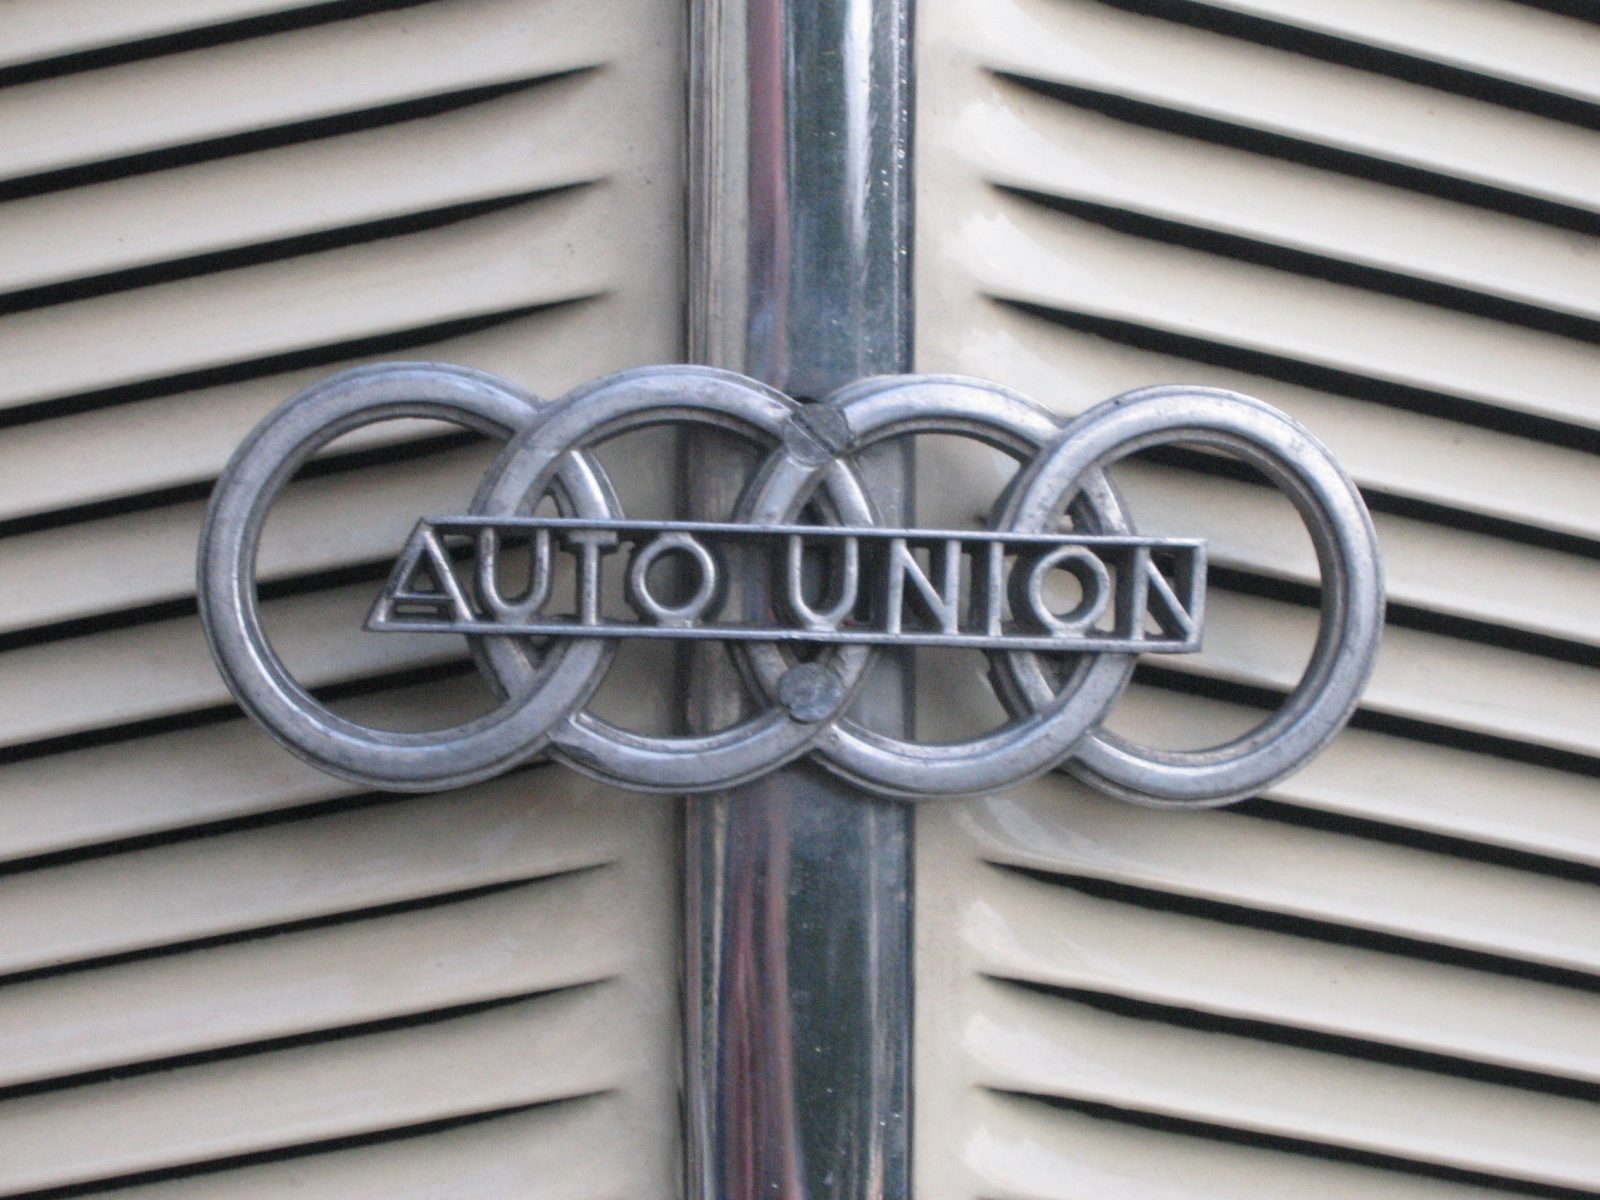 29 juin 1932 – Création d’auto-Union